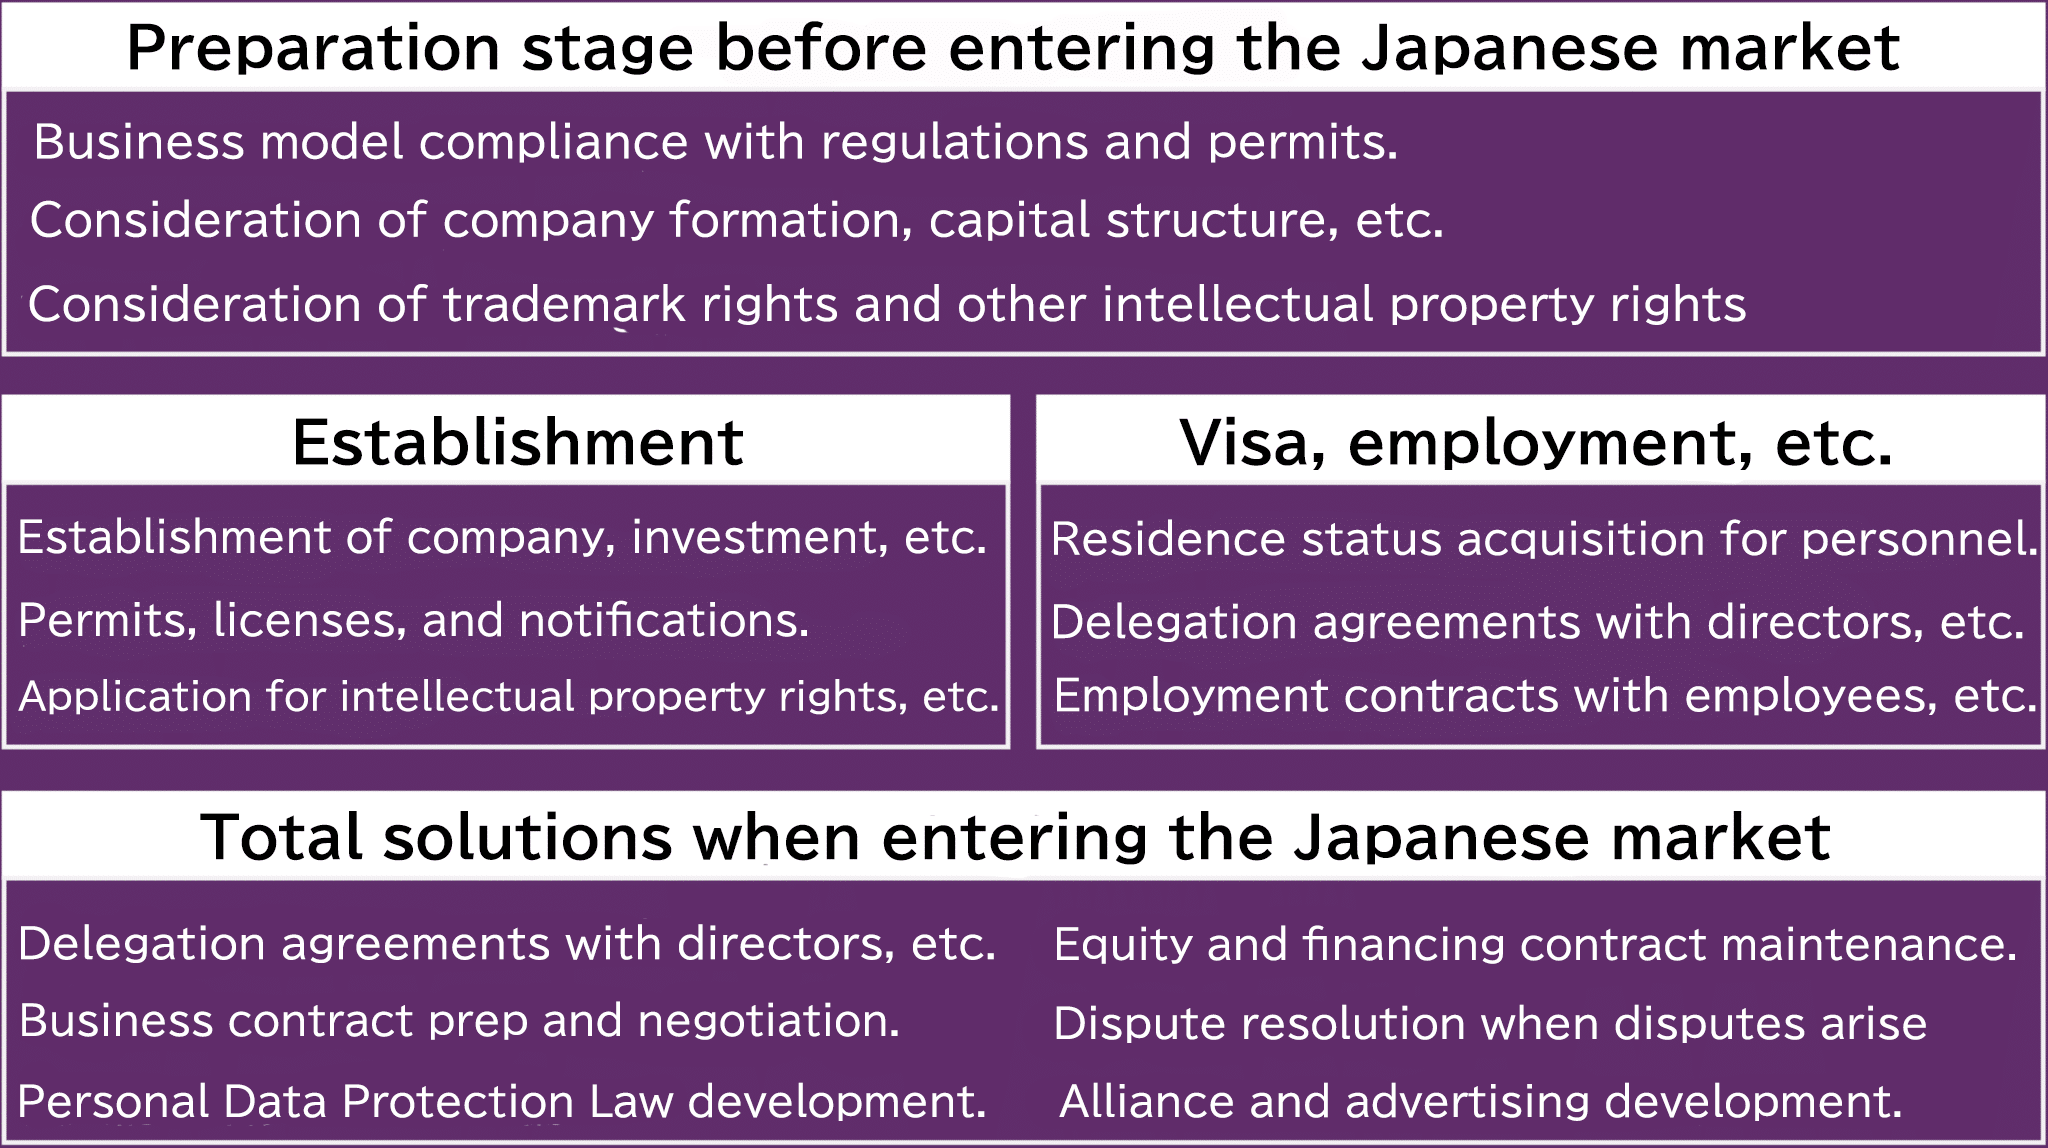 Celková podpora při vstupu na japonský trh